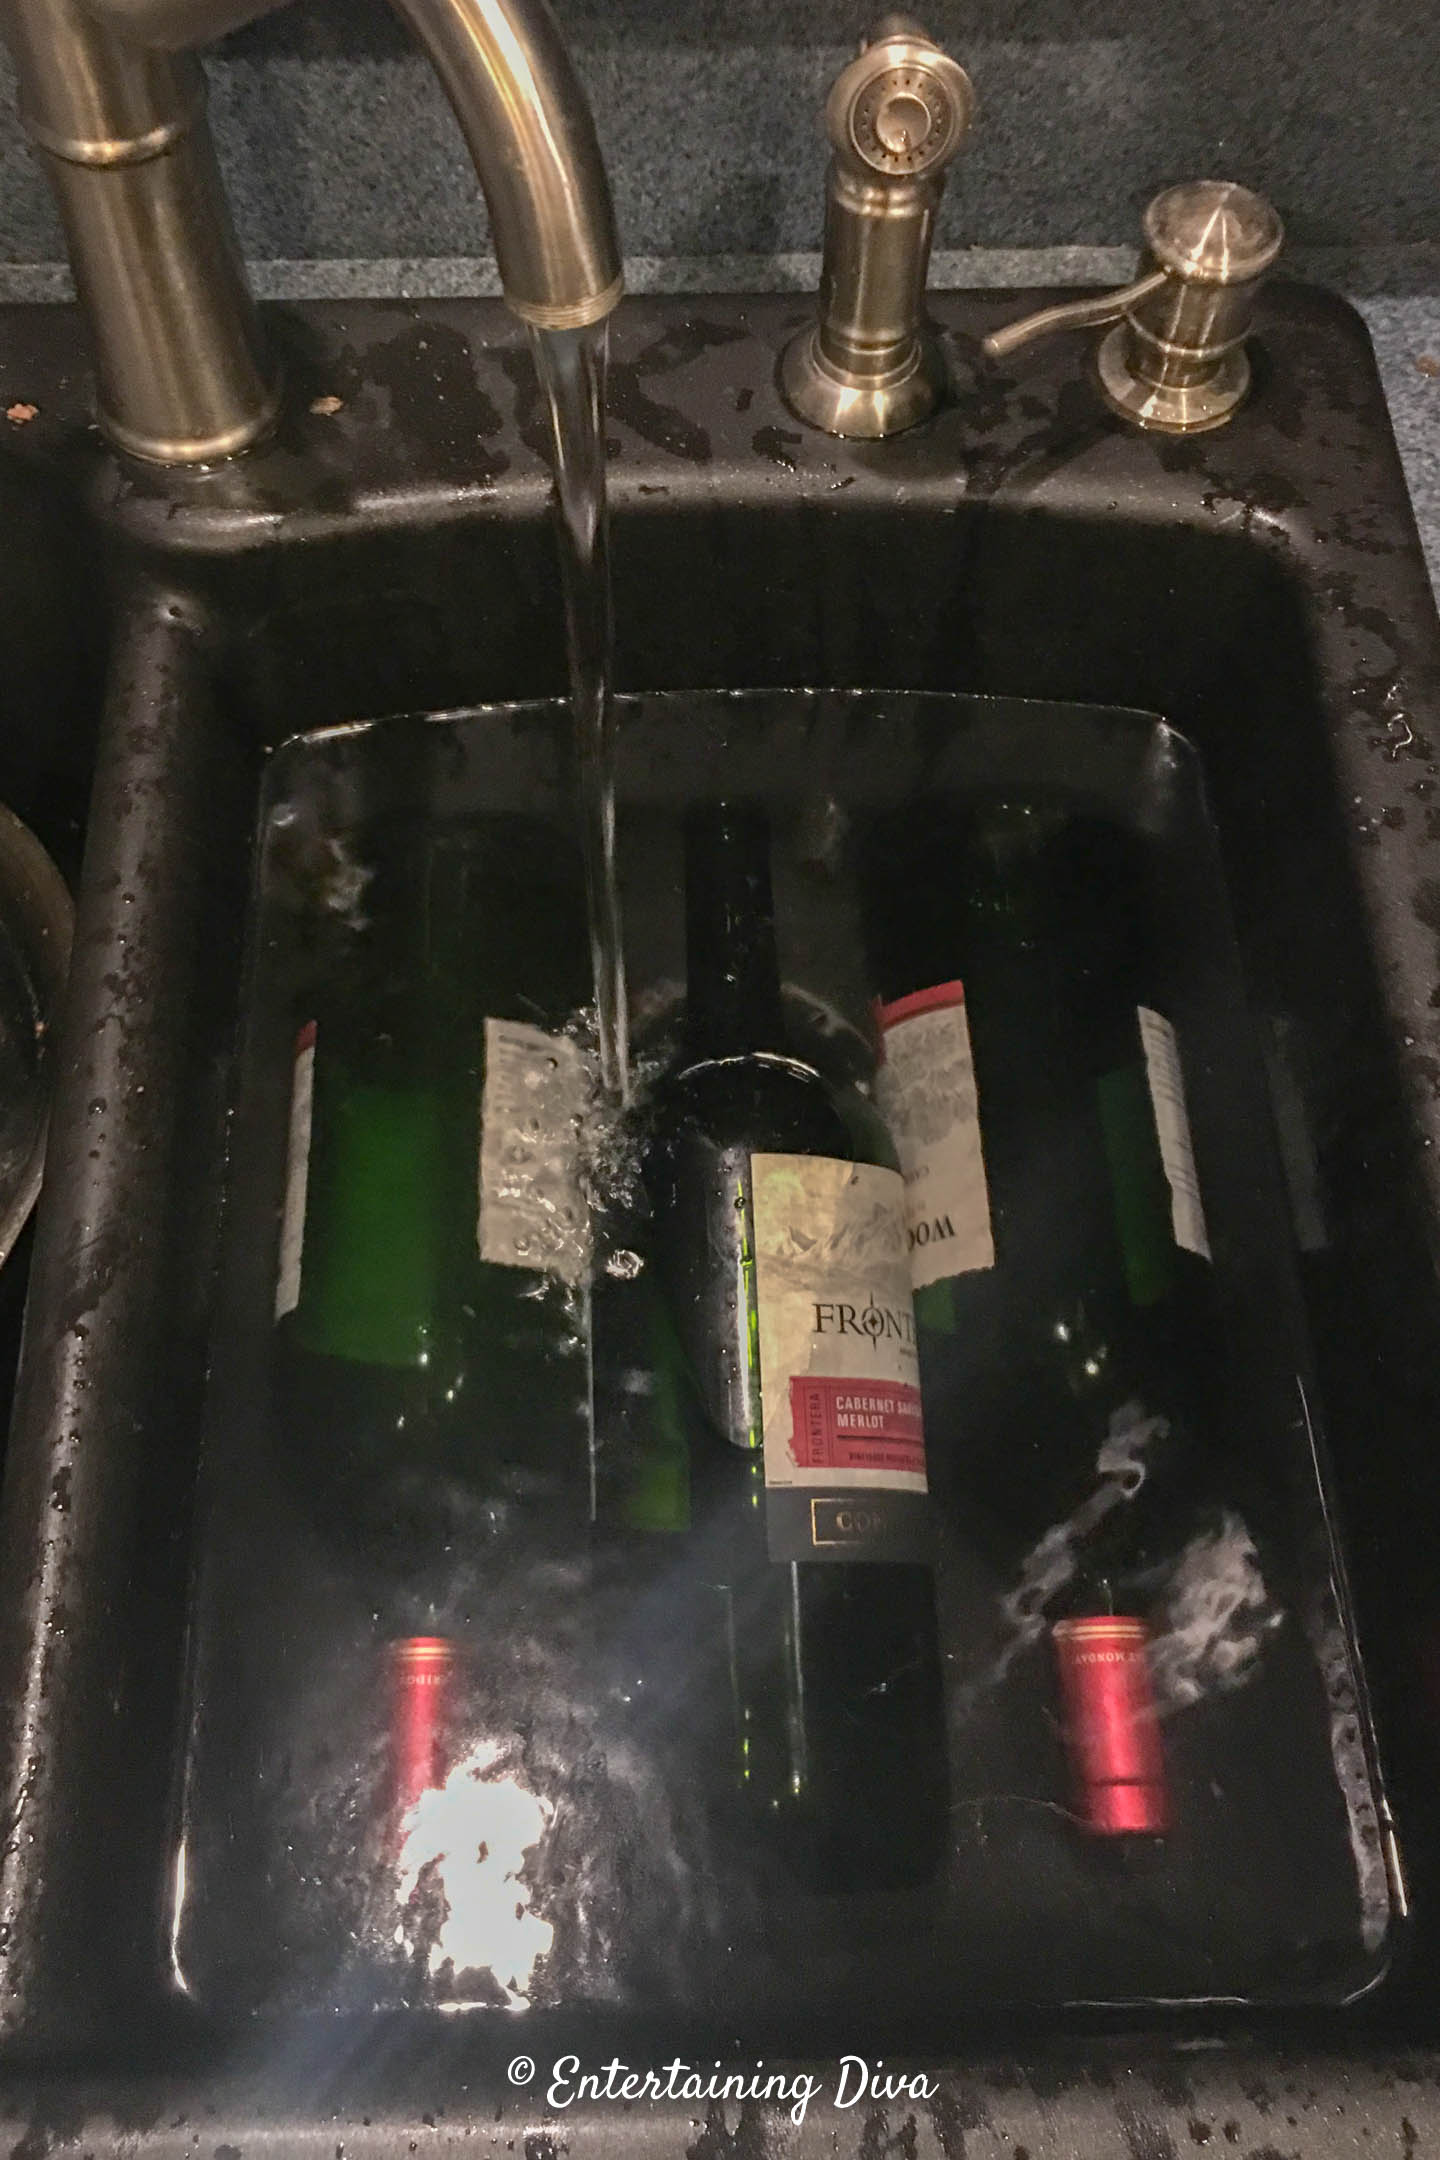 wine bottles soaking in the sink